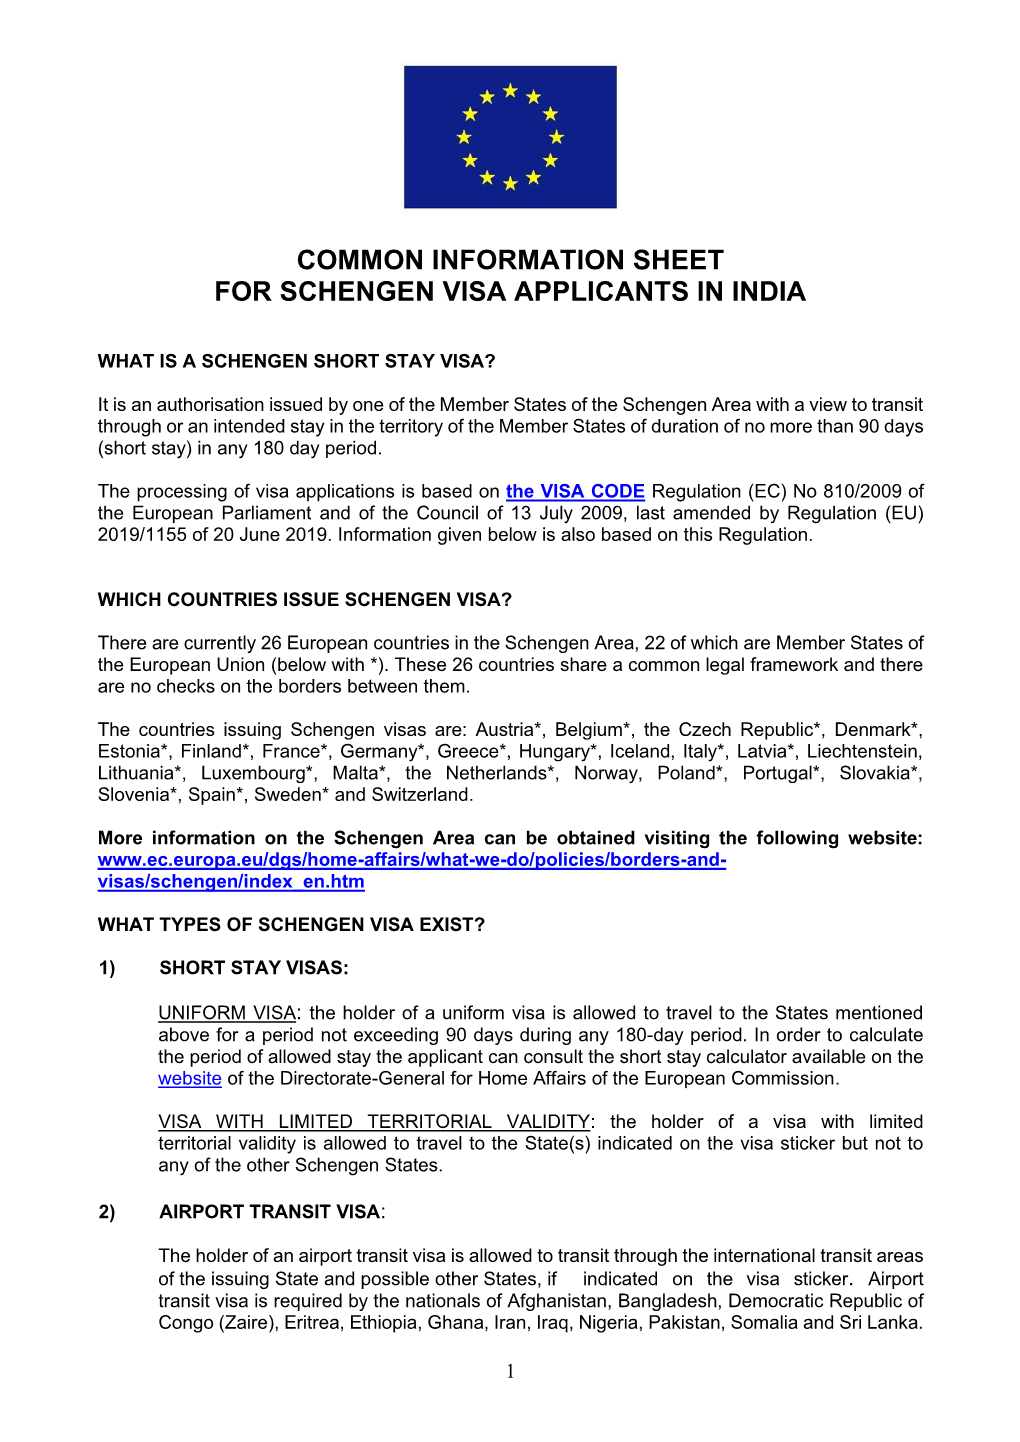 Common Information Sheet for Schengen Visa Applicants in India